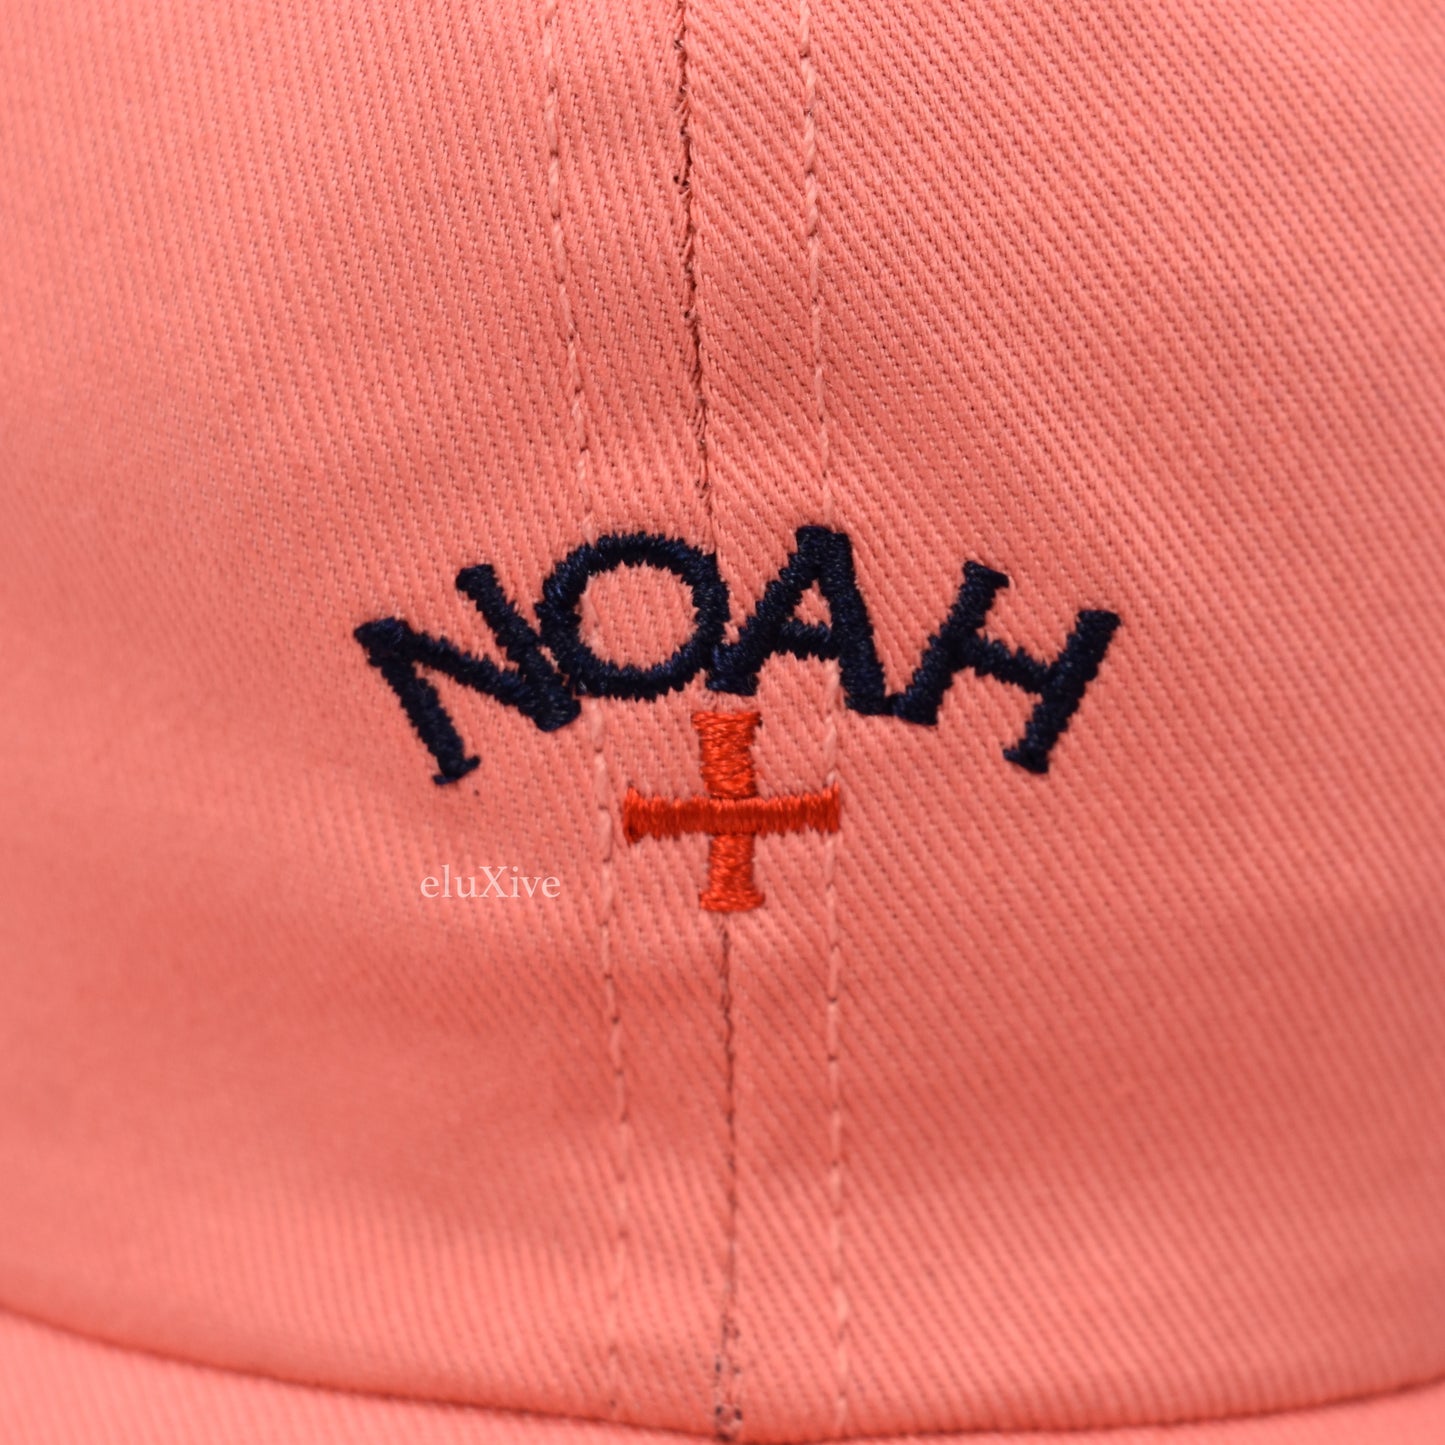 Noah - Salmon Core Logo Hat